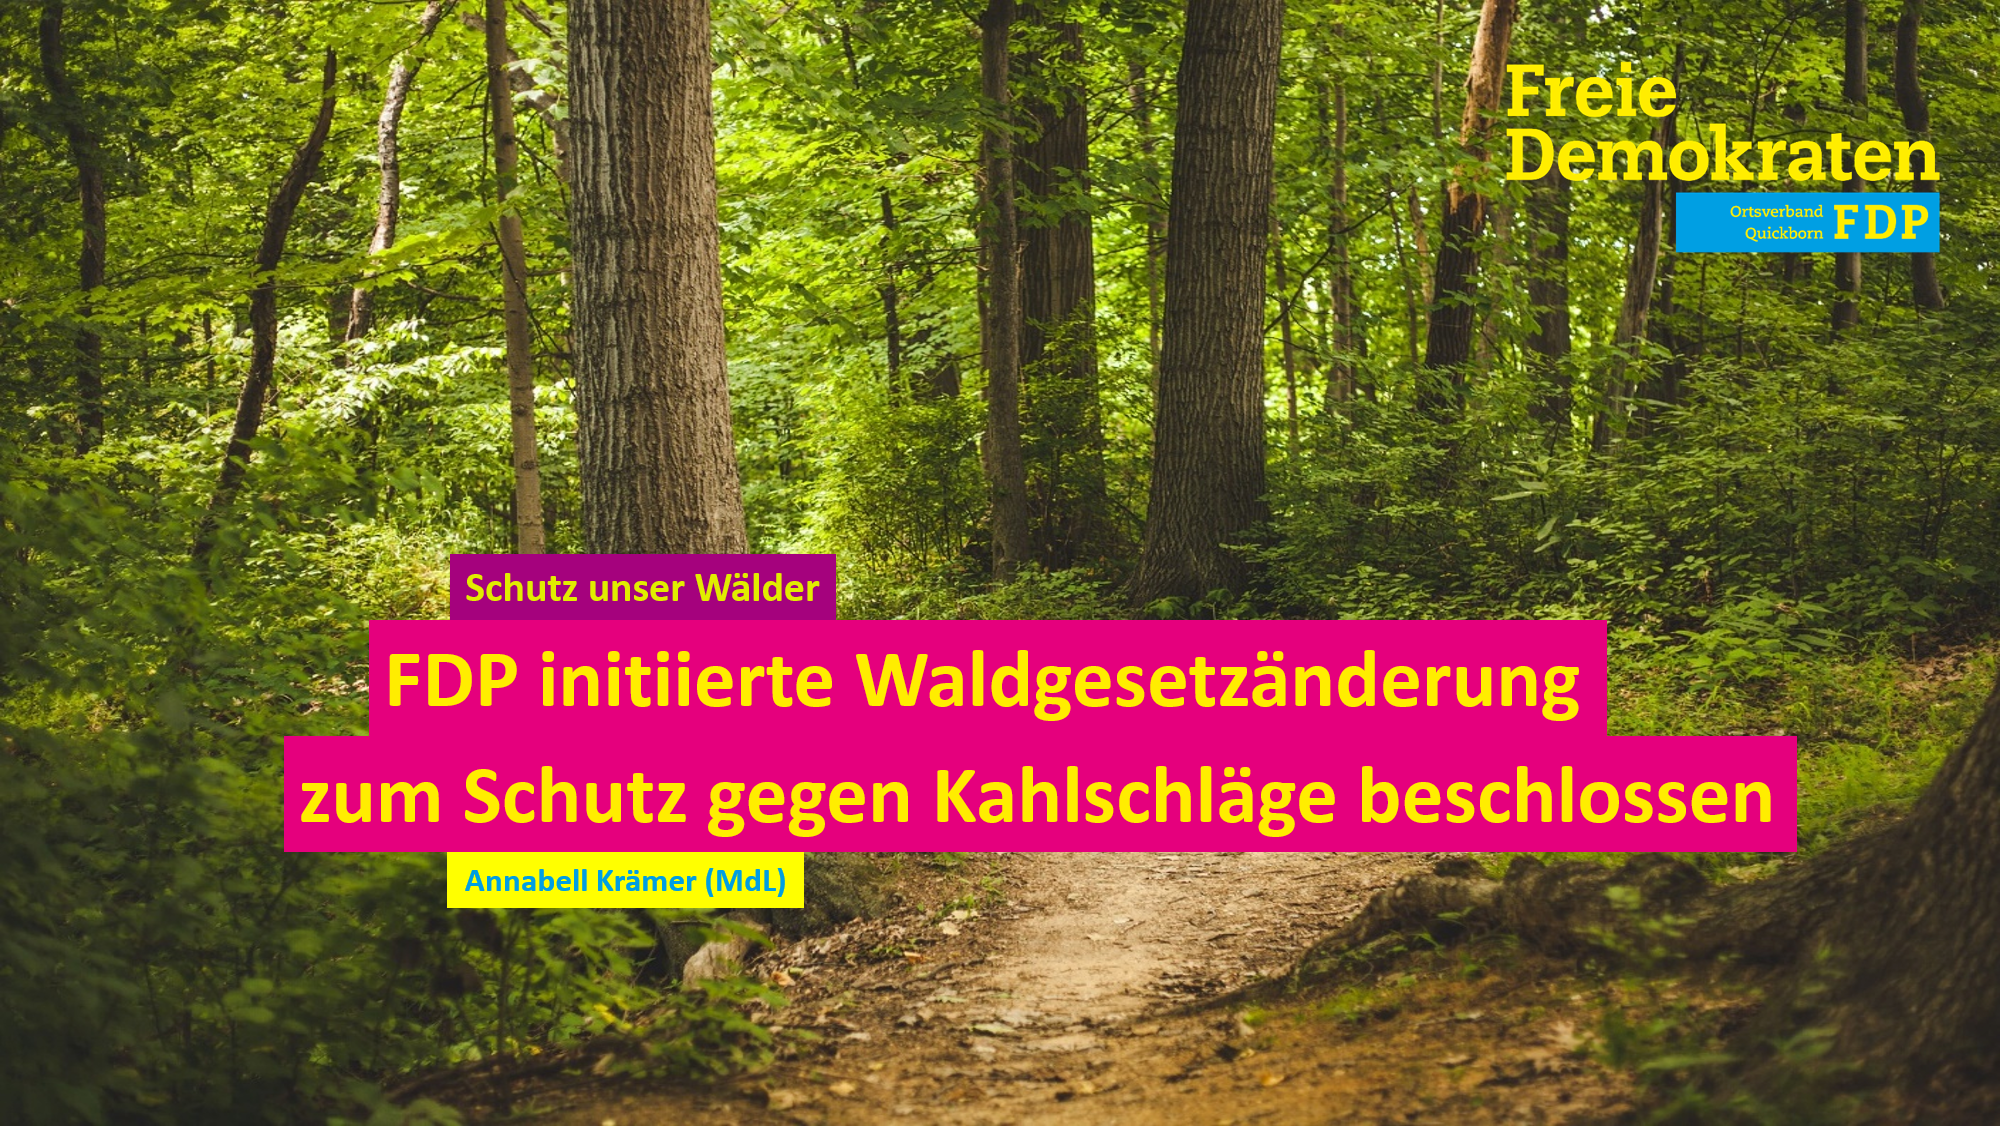 FDP initiierte Waldgesetzänderung zum Schutz gegen Kahlschläge